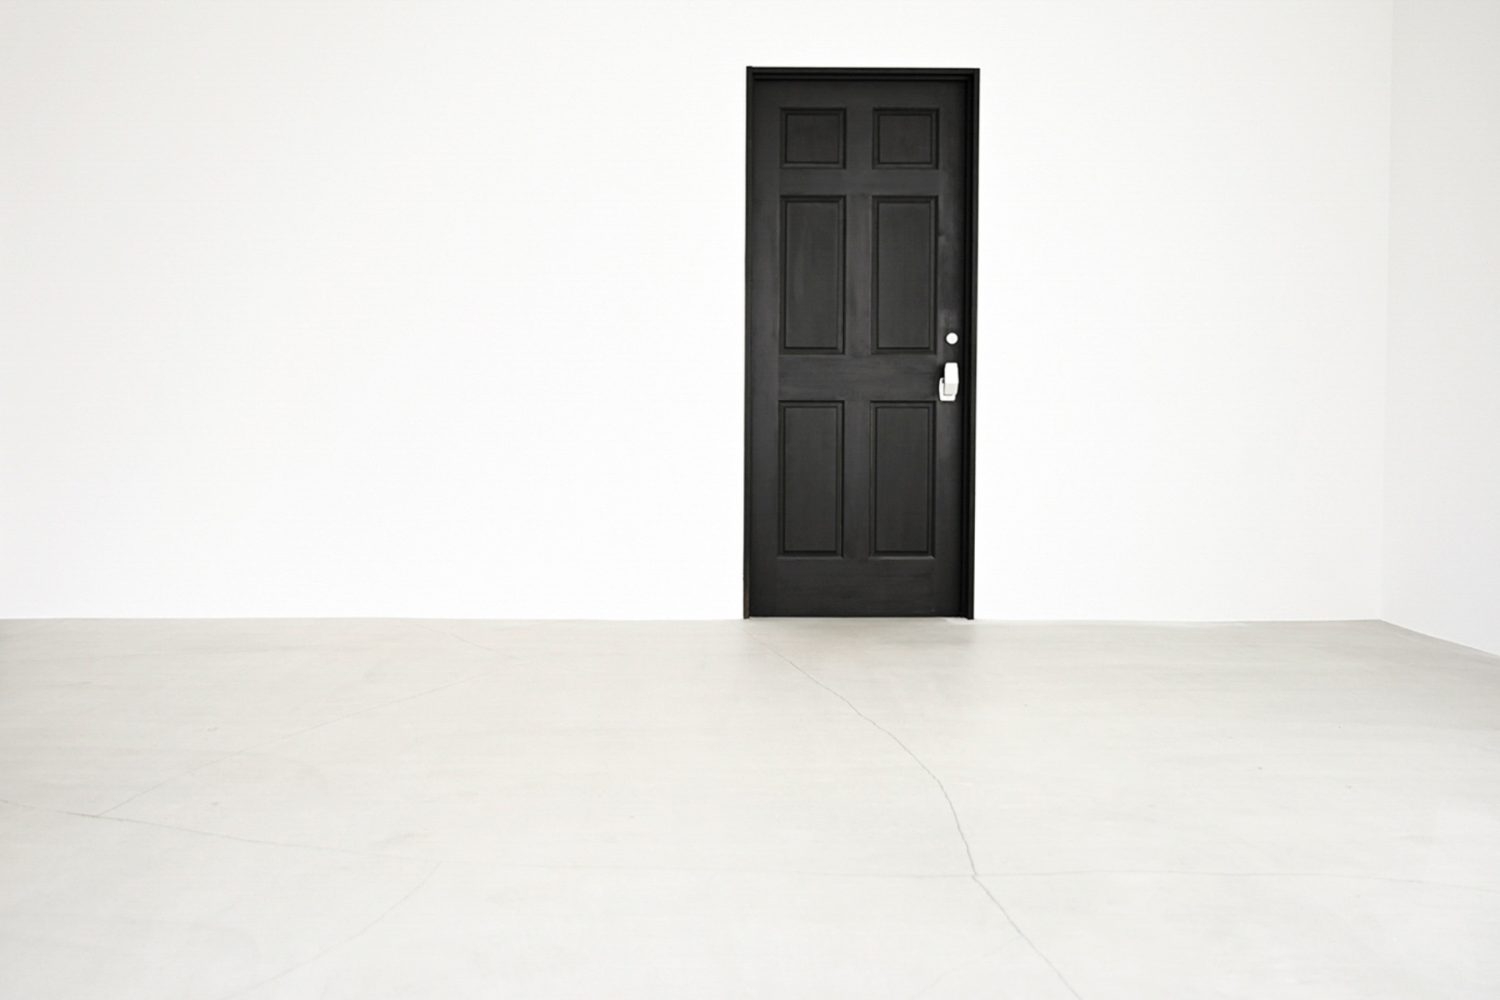 黒いドアの左右に広がる真っ白な壁